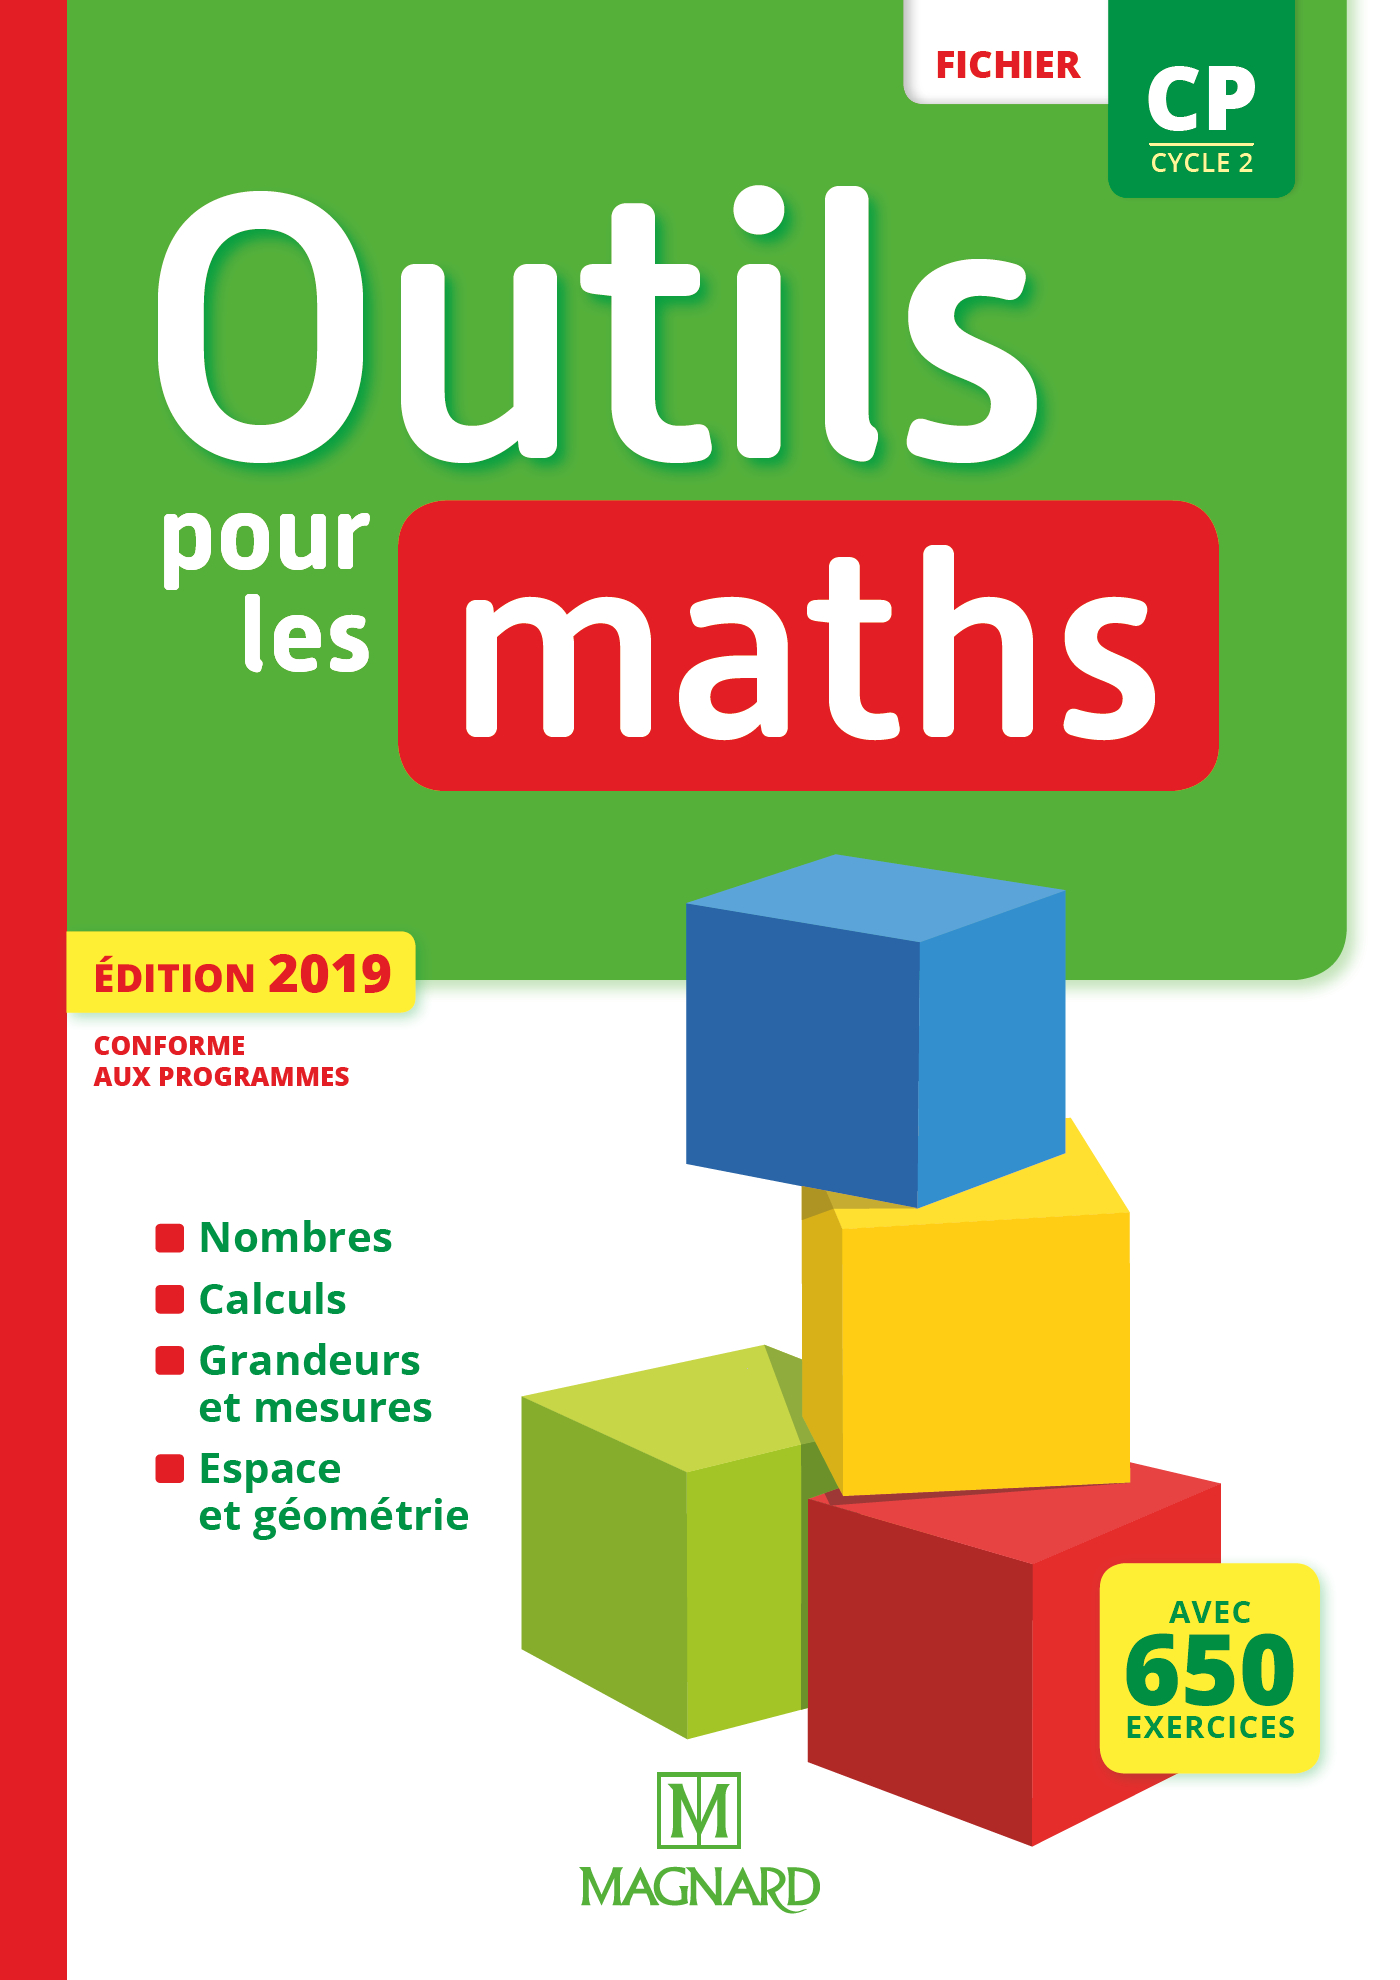 Outils Pour Les Maths Cm2 2016 Pdf thème Malchance bureau outils pour les maths pdf Critique Tomber  systématique